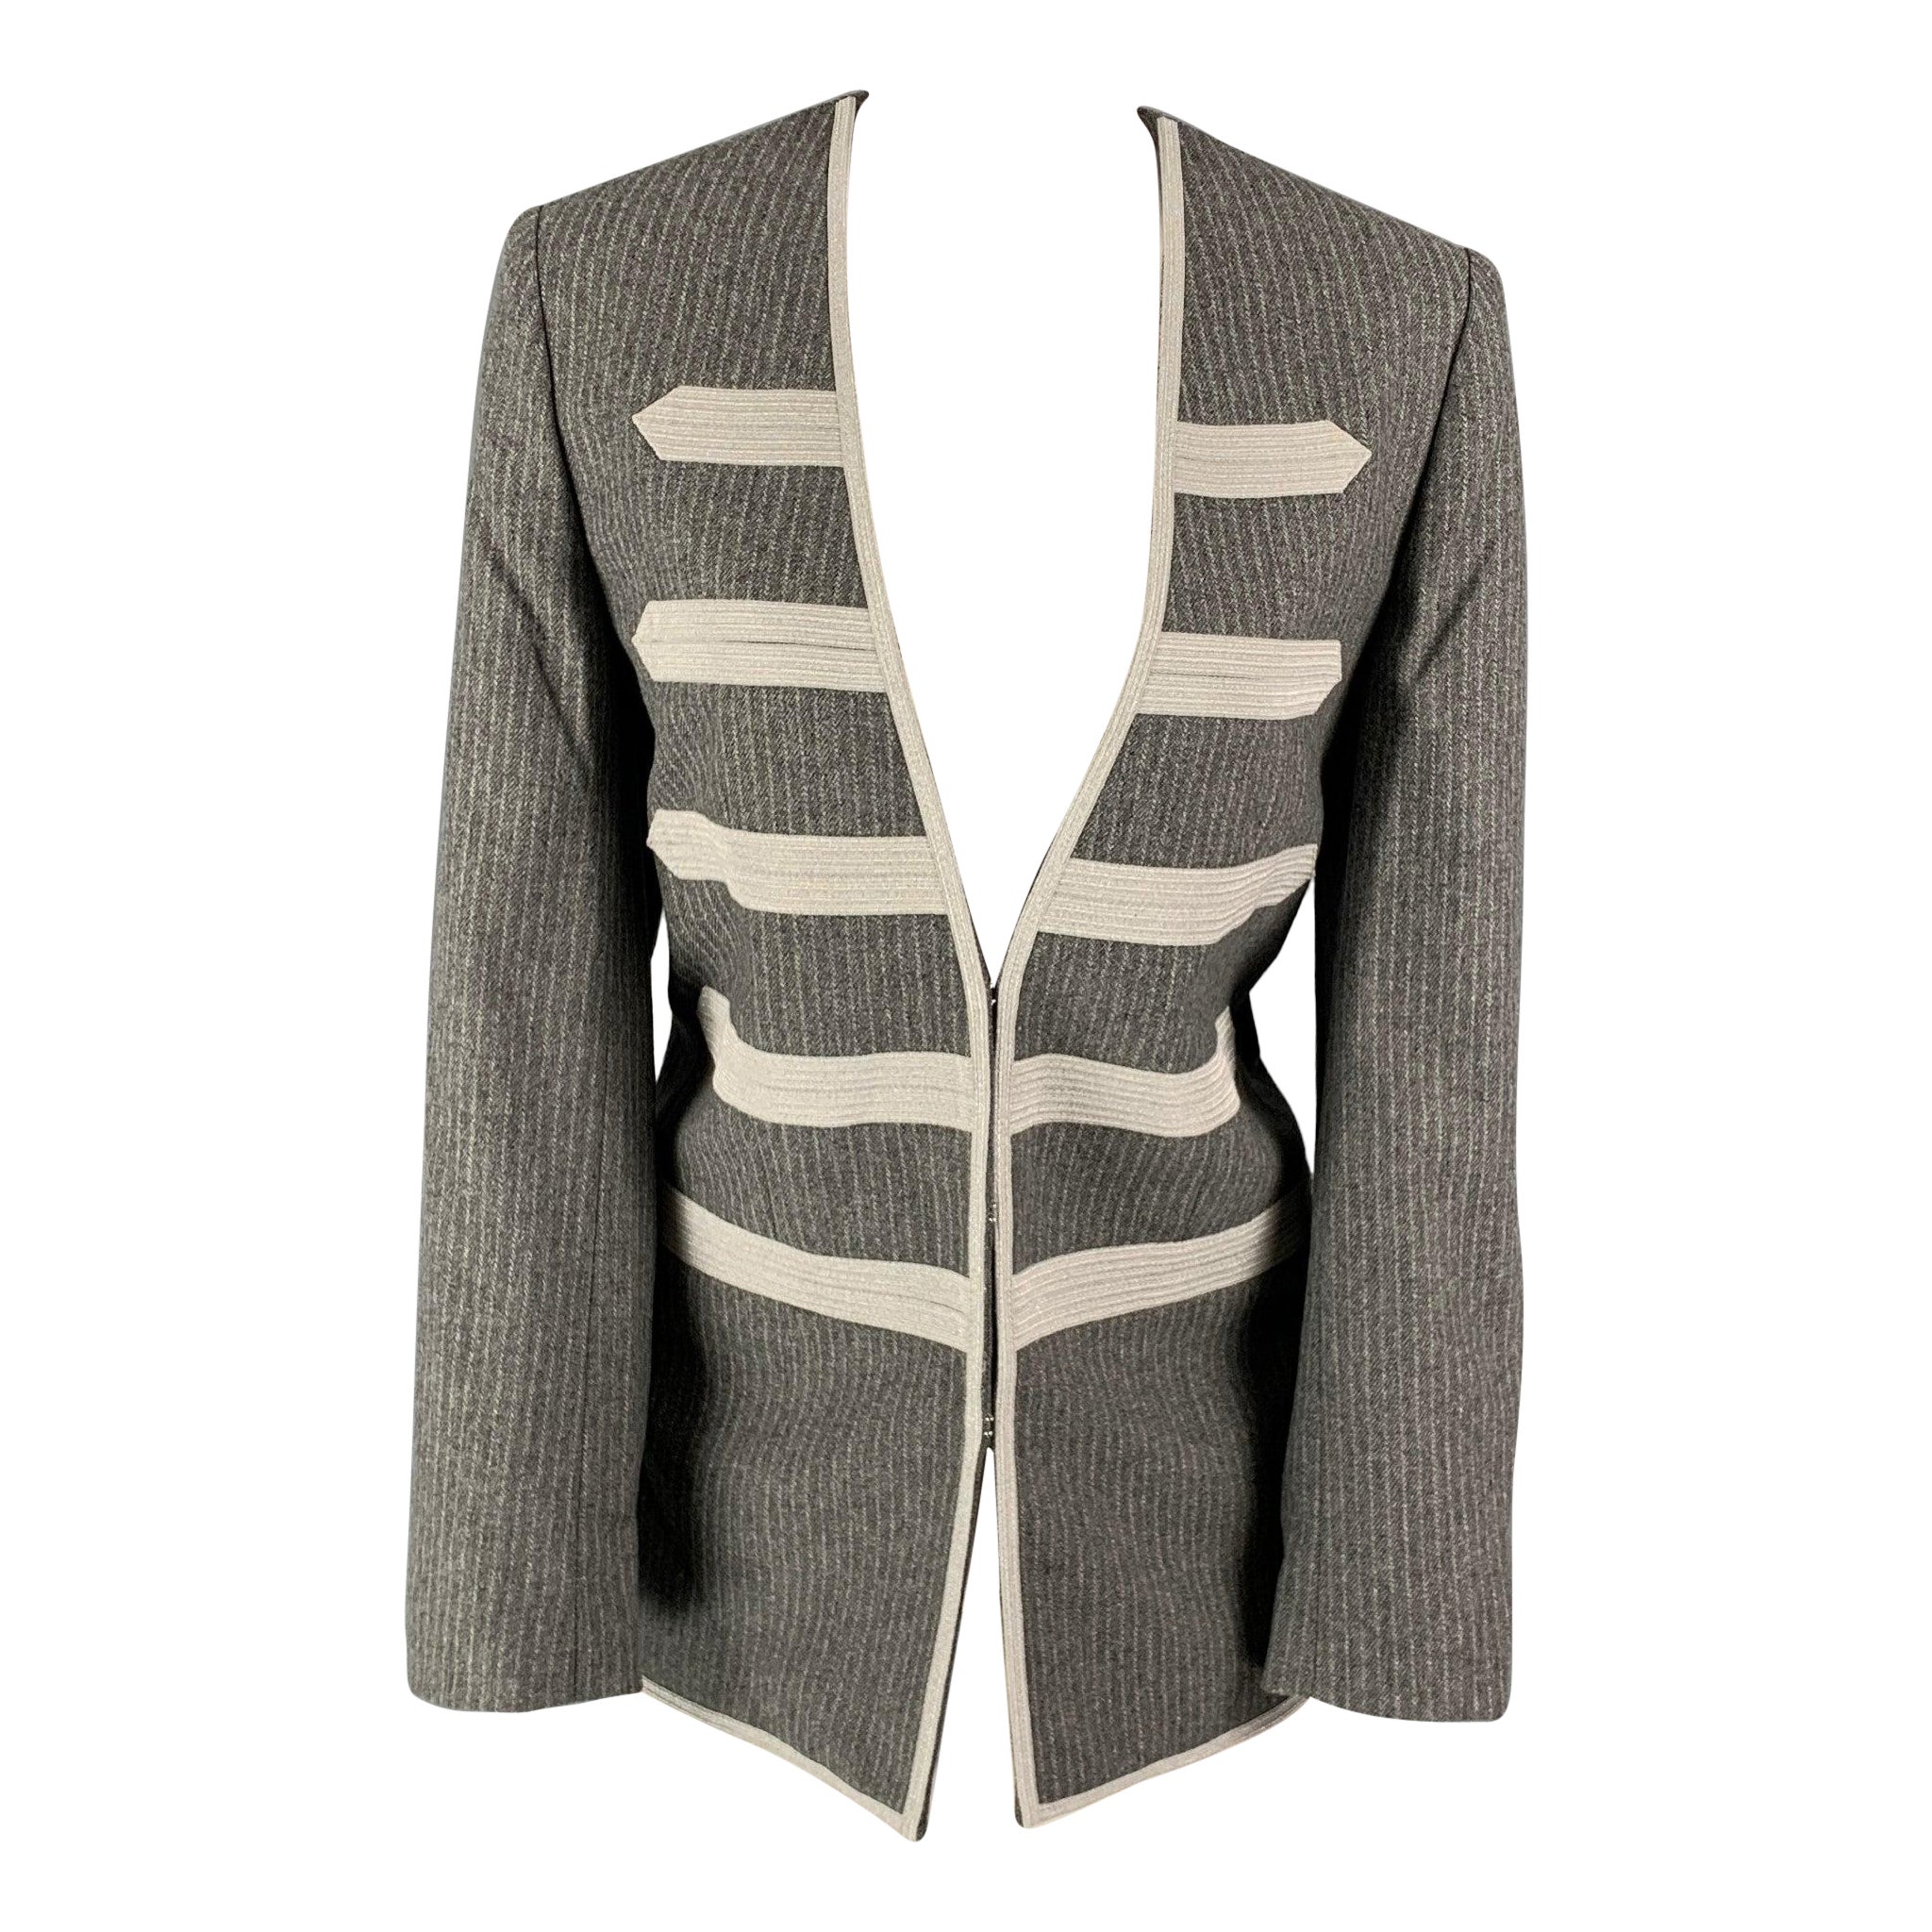 ZADIG & VOLTAIRE Manteau militaire à rayures en laine mélangée, gris et argent, taille 4